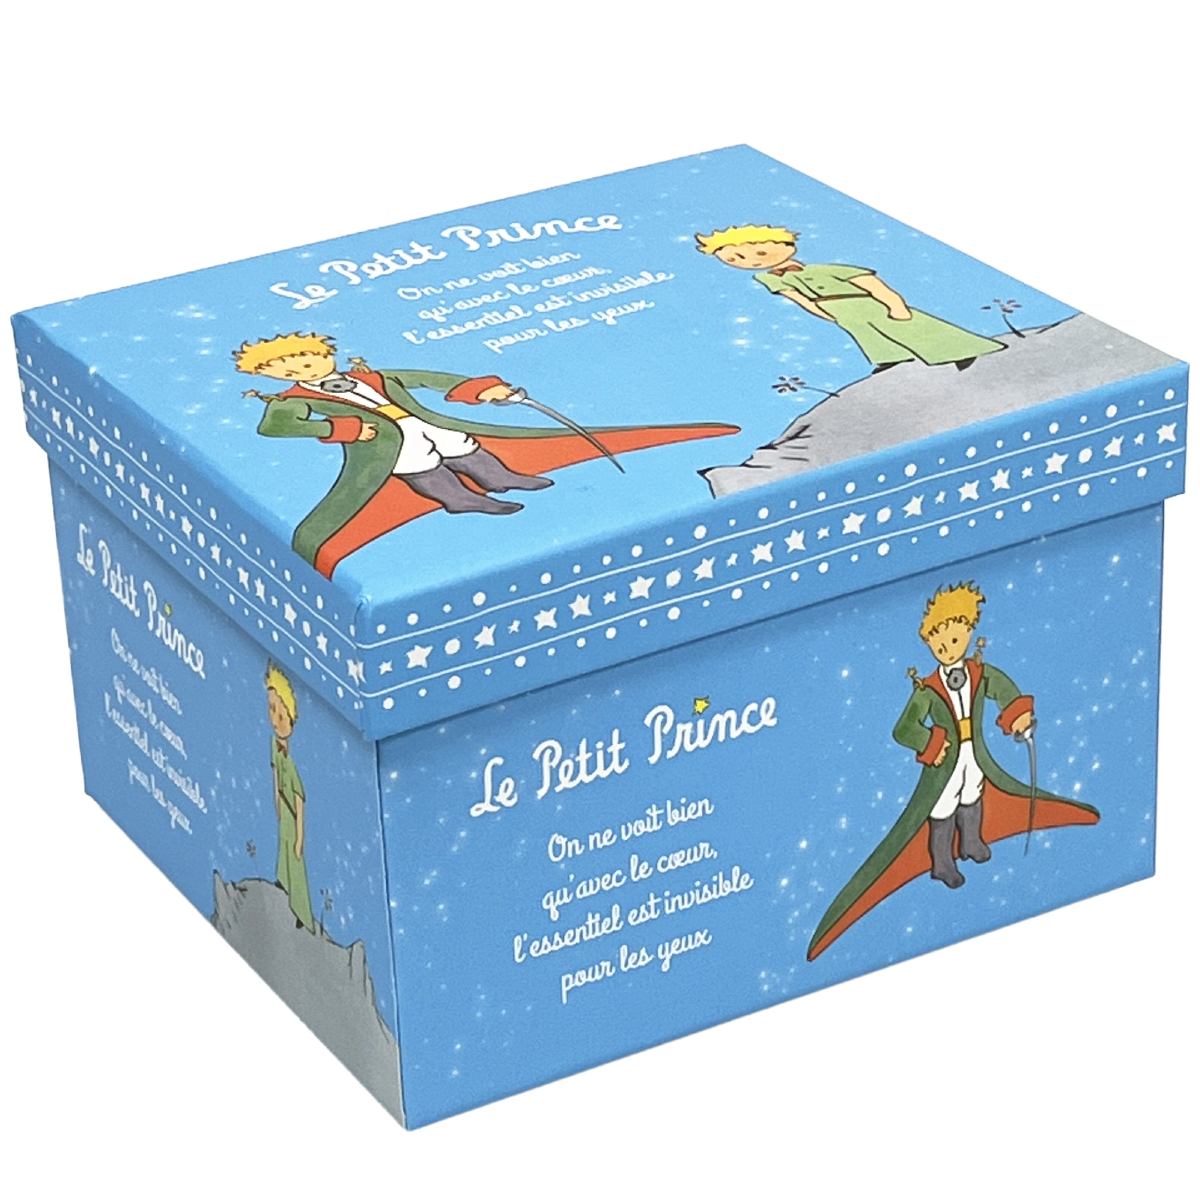 Le Petit Prince de St Exupéry Box sets of 2 cups